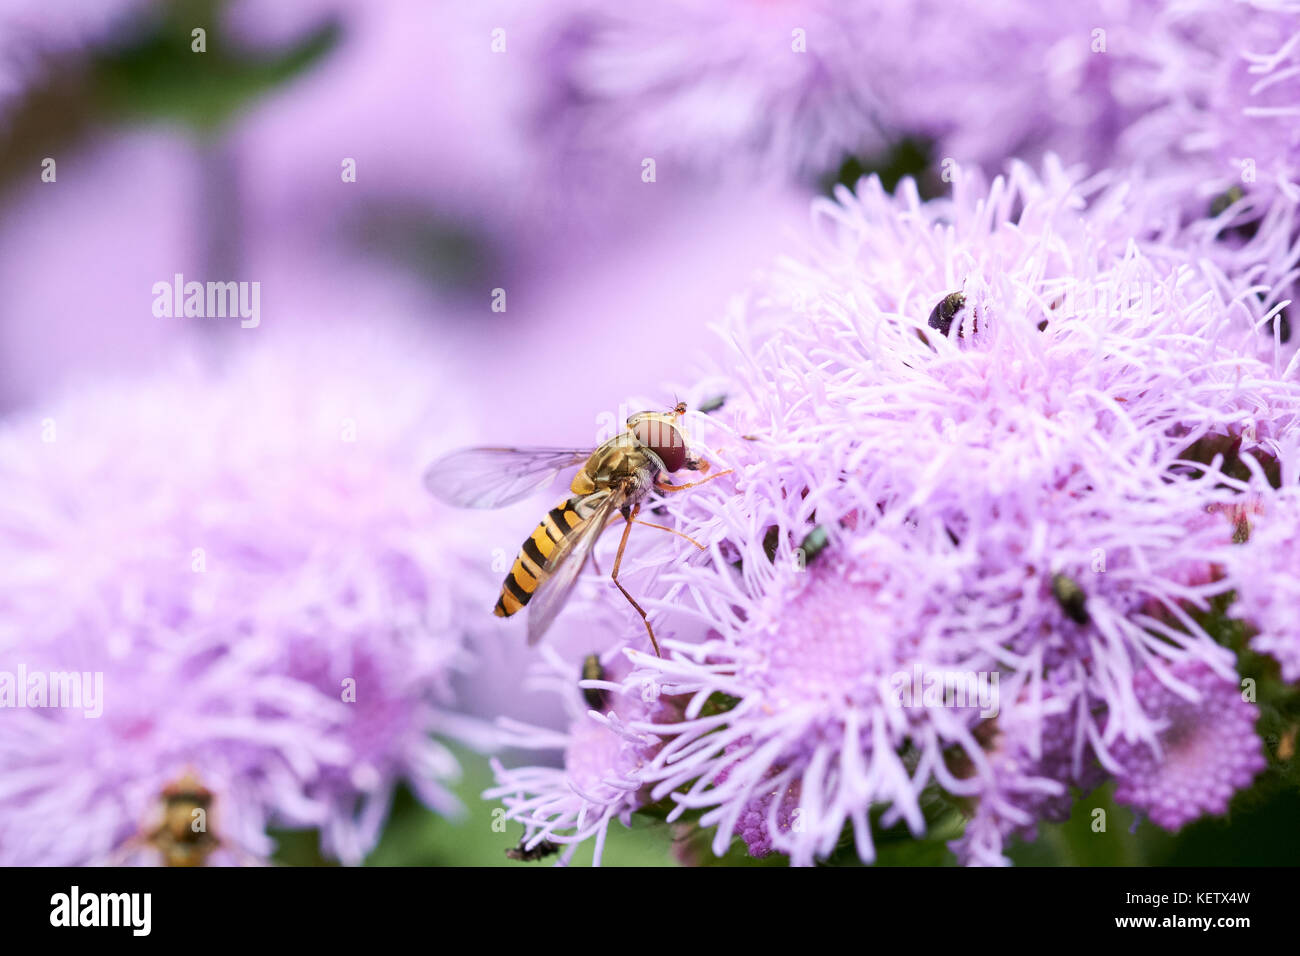 Passare il puntatore del mouse comune-fly (Syrphus ribesii) sull'alimentazione del nettare da l'estate fiori viola di un Ageratum (A. houstonianum diamante blu F1) pianta di giardino, UK. Foto Stock